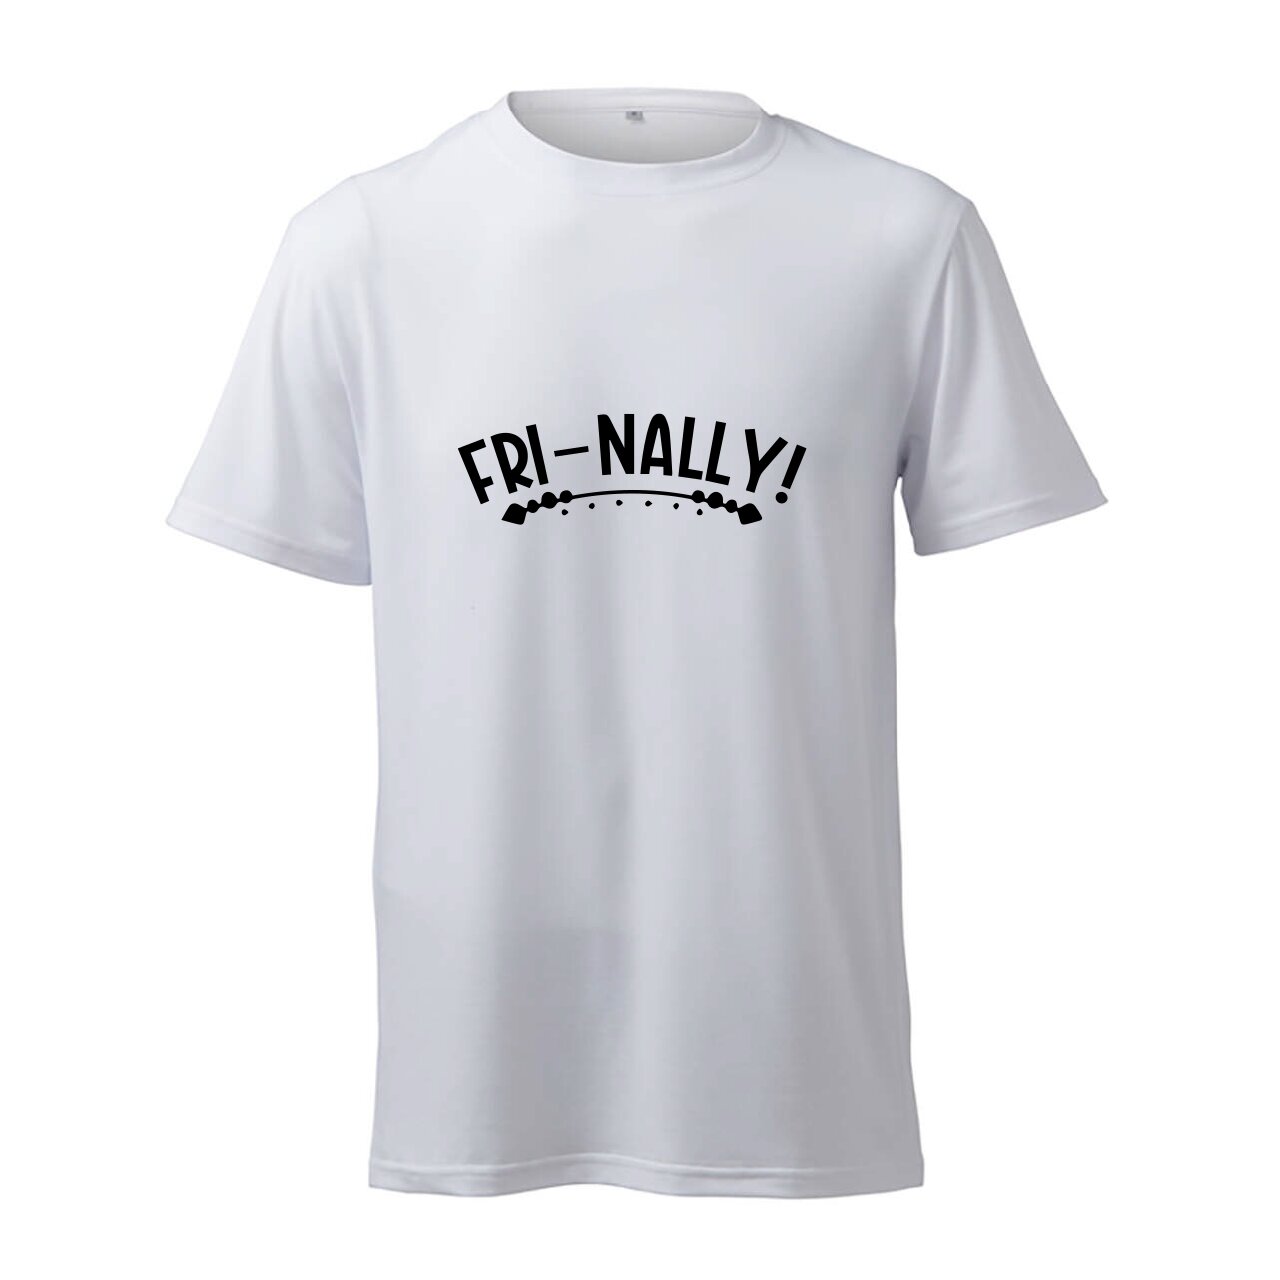 Fri-Nally! - T-Shirt